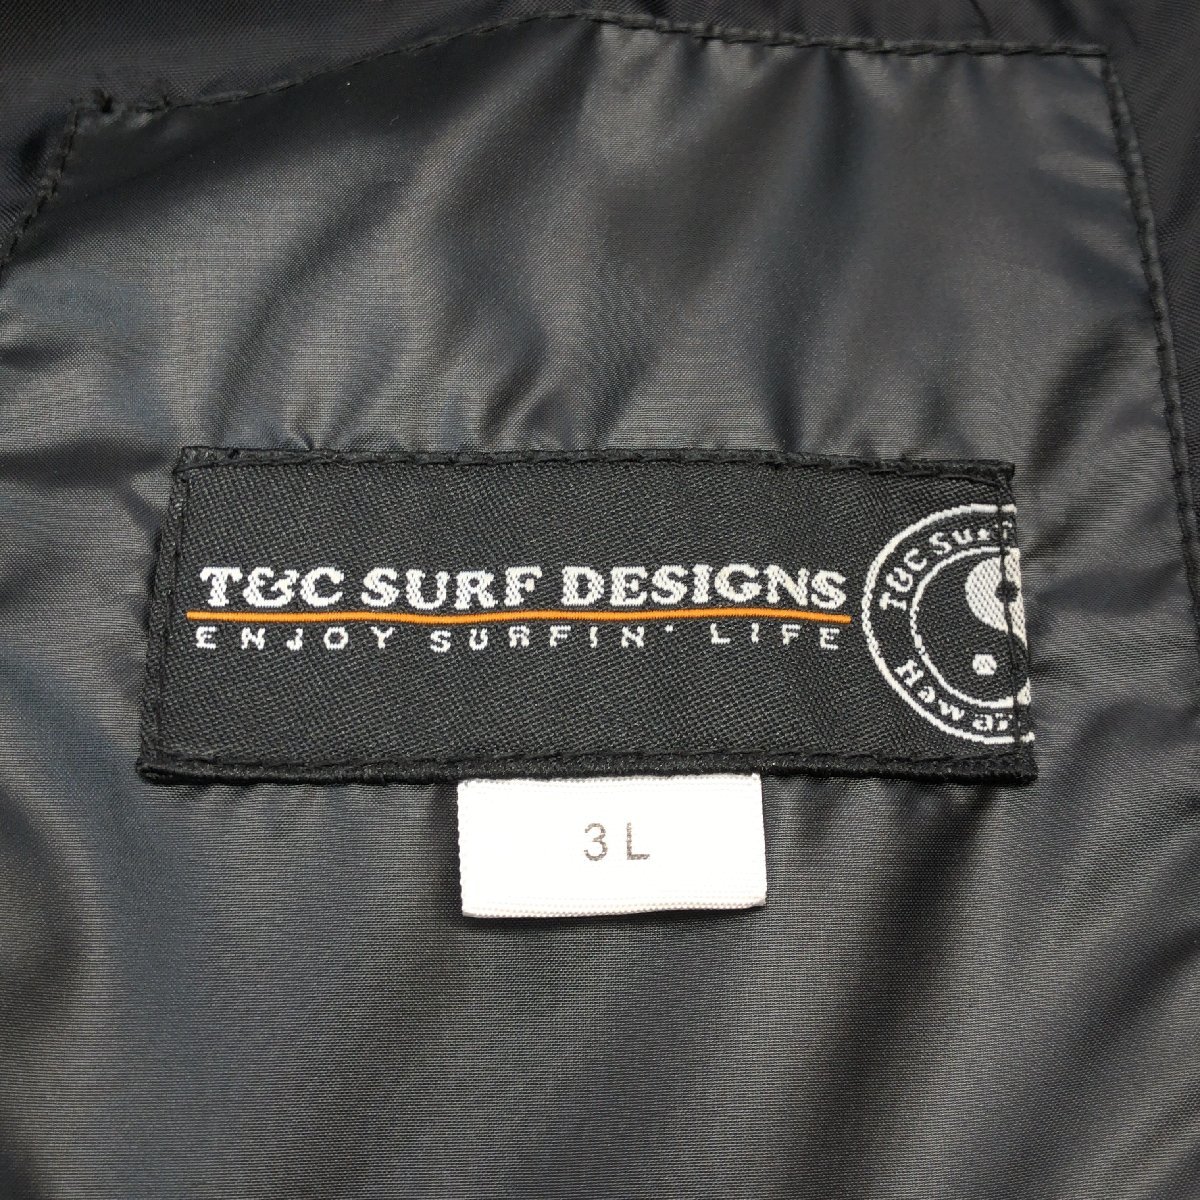 ◆T&C SURF DESIGNS T&Cサーフデザイン フードファー付き エコダウンパーカー 3L 黒 ブラック ダウンジャケット 特大 大きい 2XL メンズ_画像3